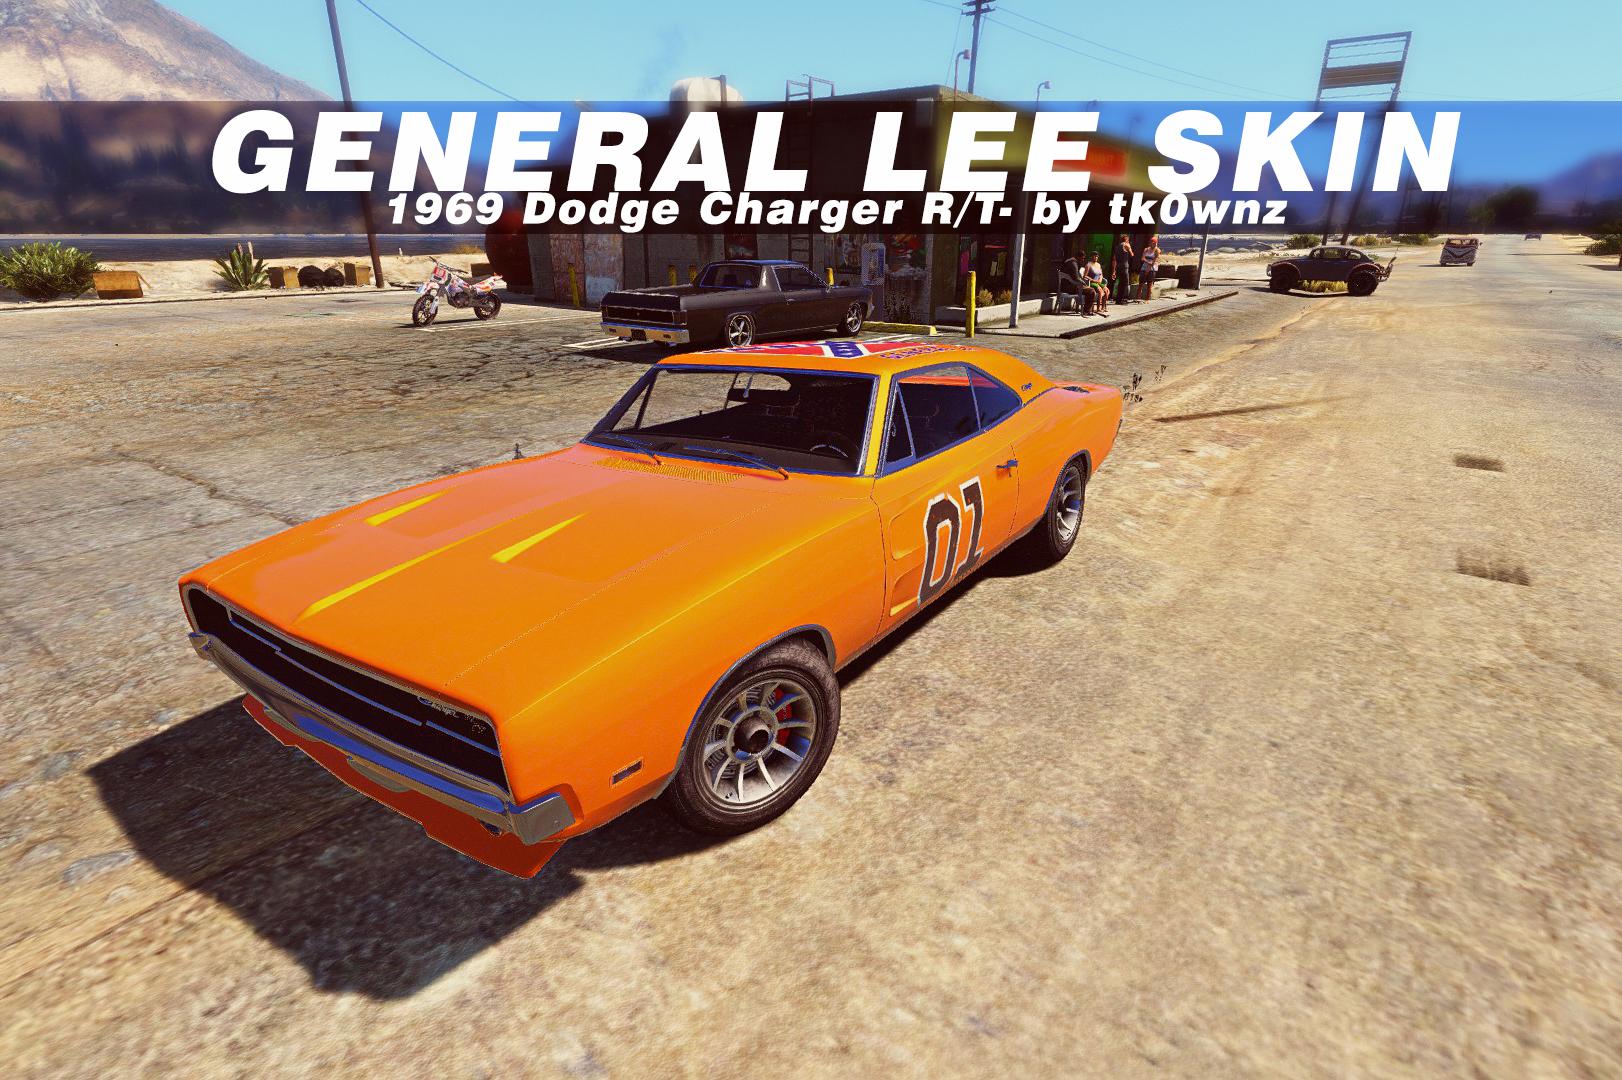 1969 Dodge Charger RT - General Lee Skin - GTA5-Mods.com